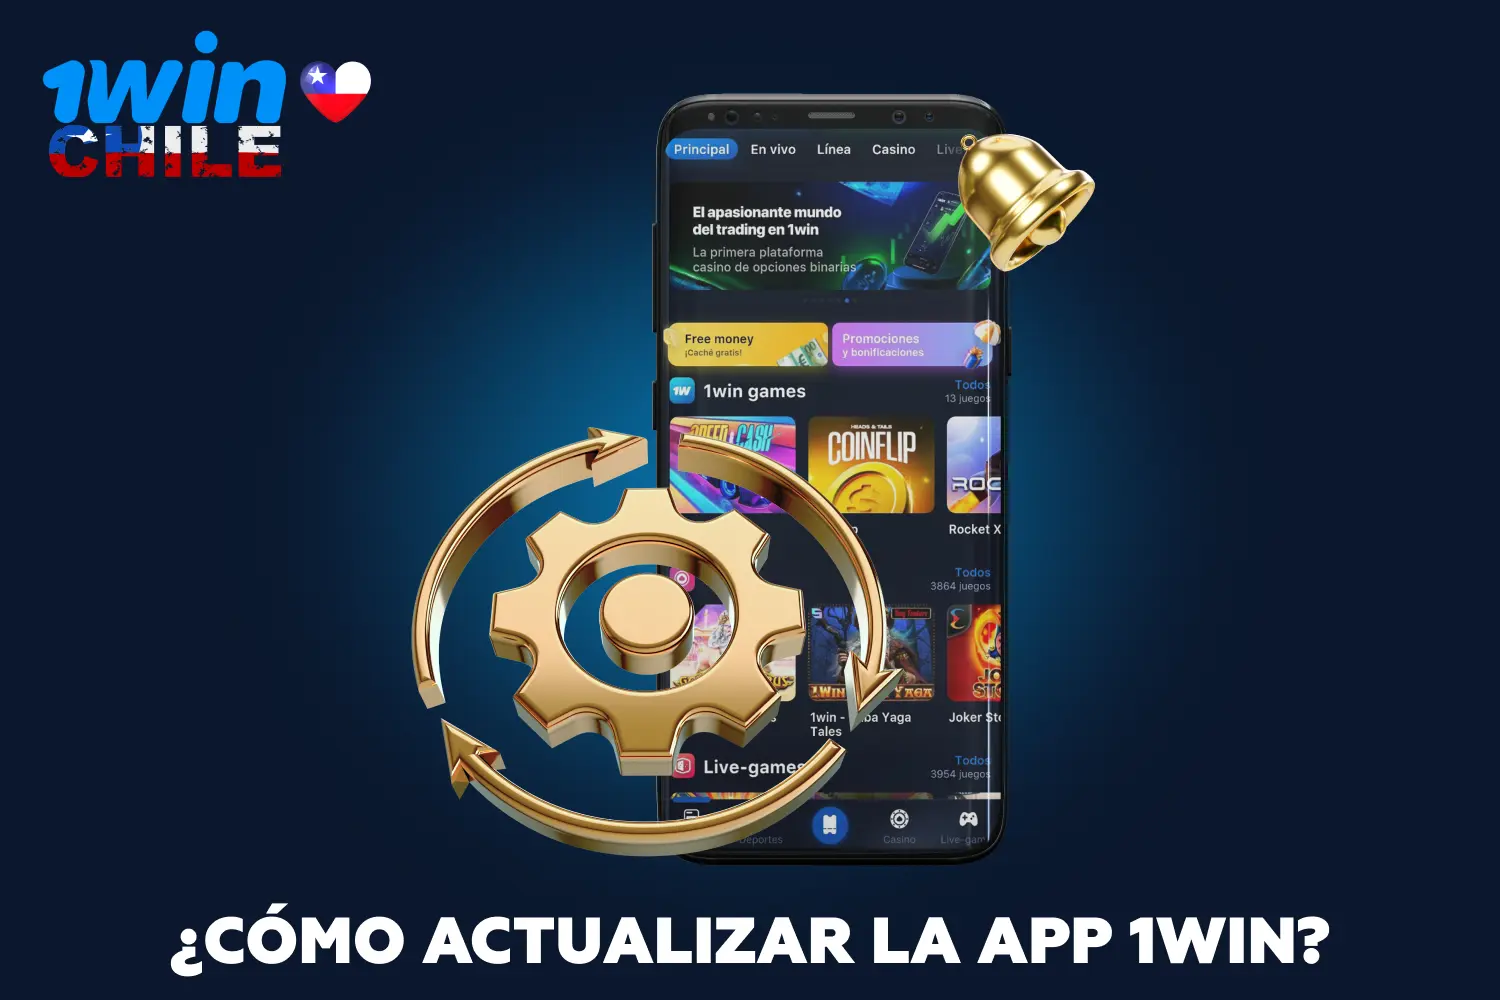 Cuando se publique una nueva versión de 1win, se recomienda a los jugadores de Chile que la instalen en sus dispositivos para disfrutar de una aplicación mejorada y actualizada